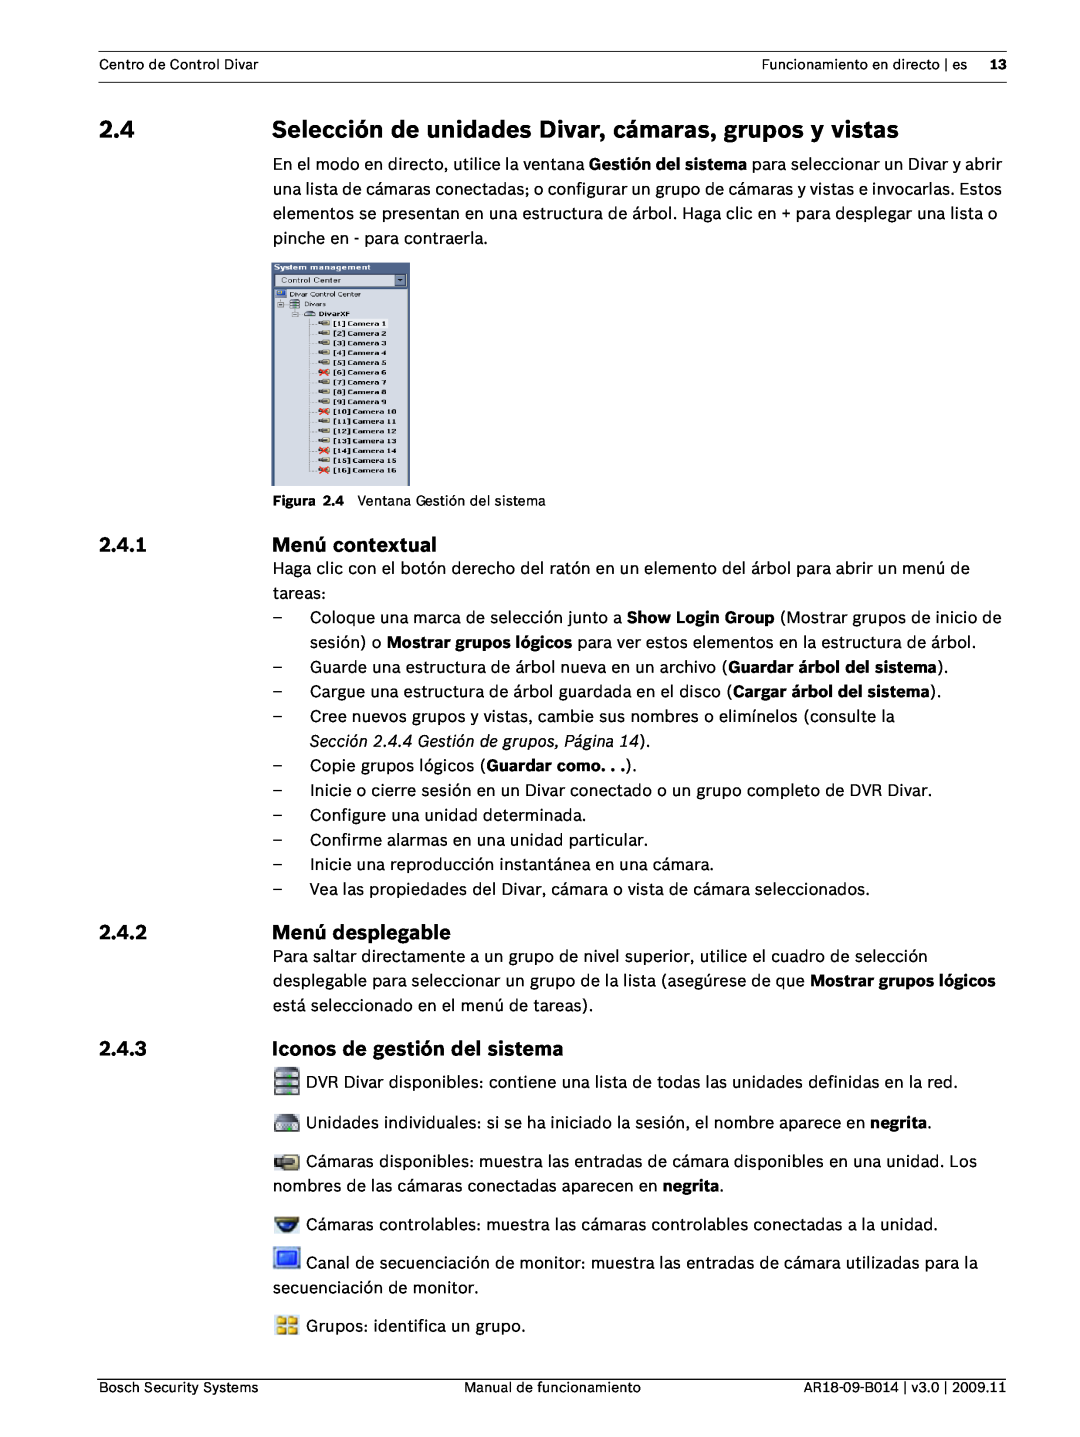 Bosch Appliances AR18-09-B014 manual 2.4.1, Menú contextual, 2.4.2, Menú desplegable, 2.4.3, Iconos de gestión del sistema 